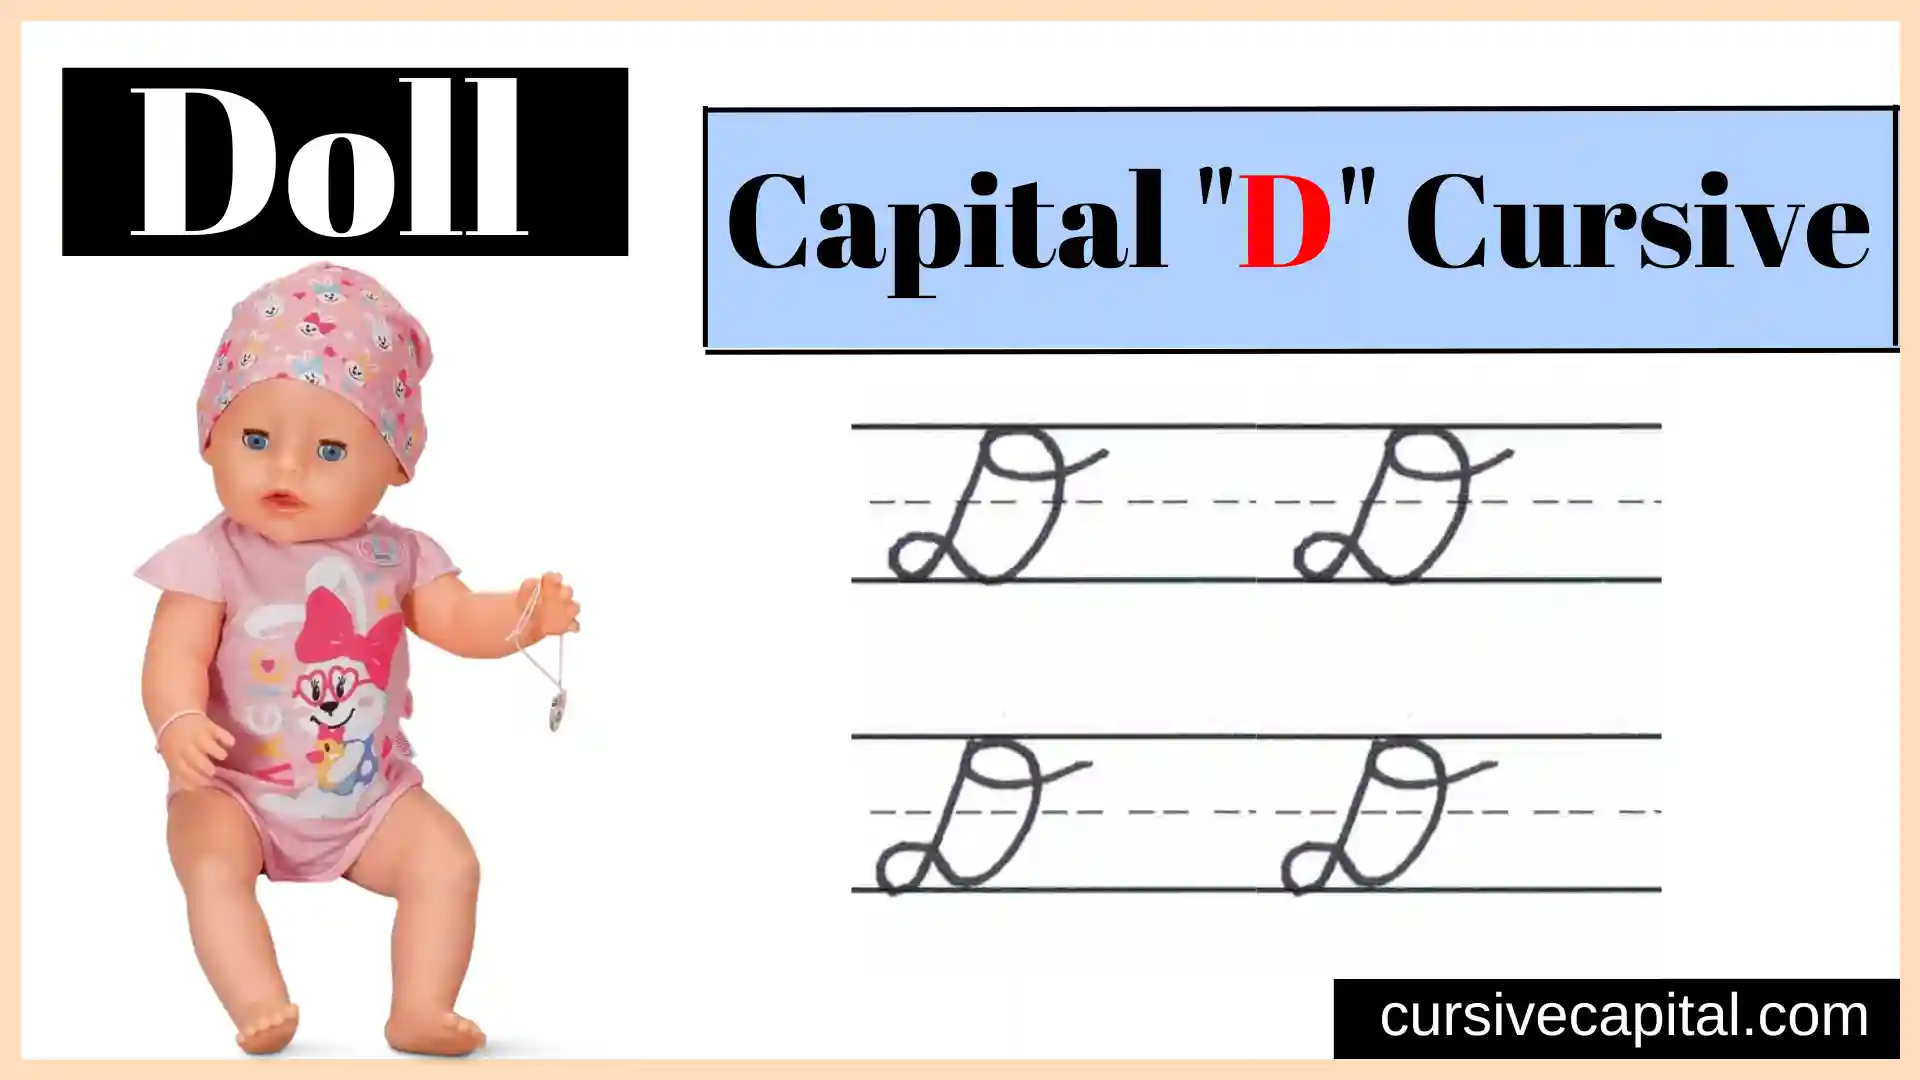 Capital D cursive